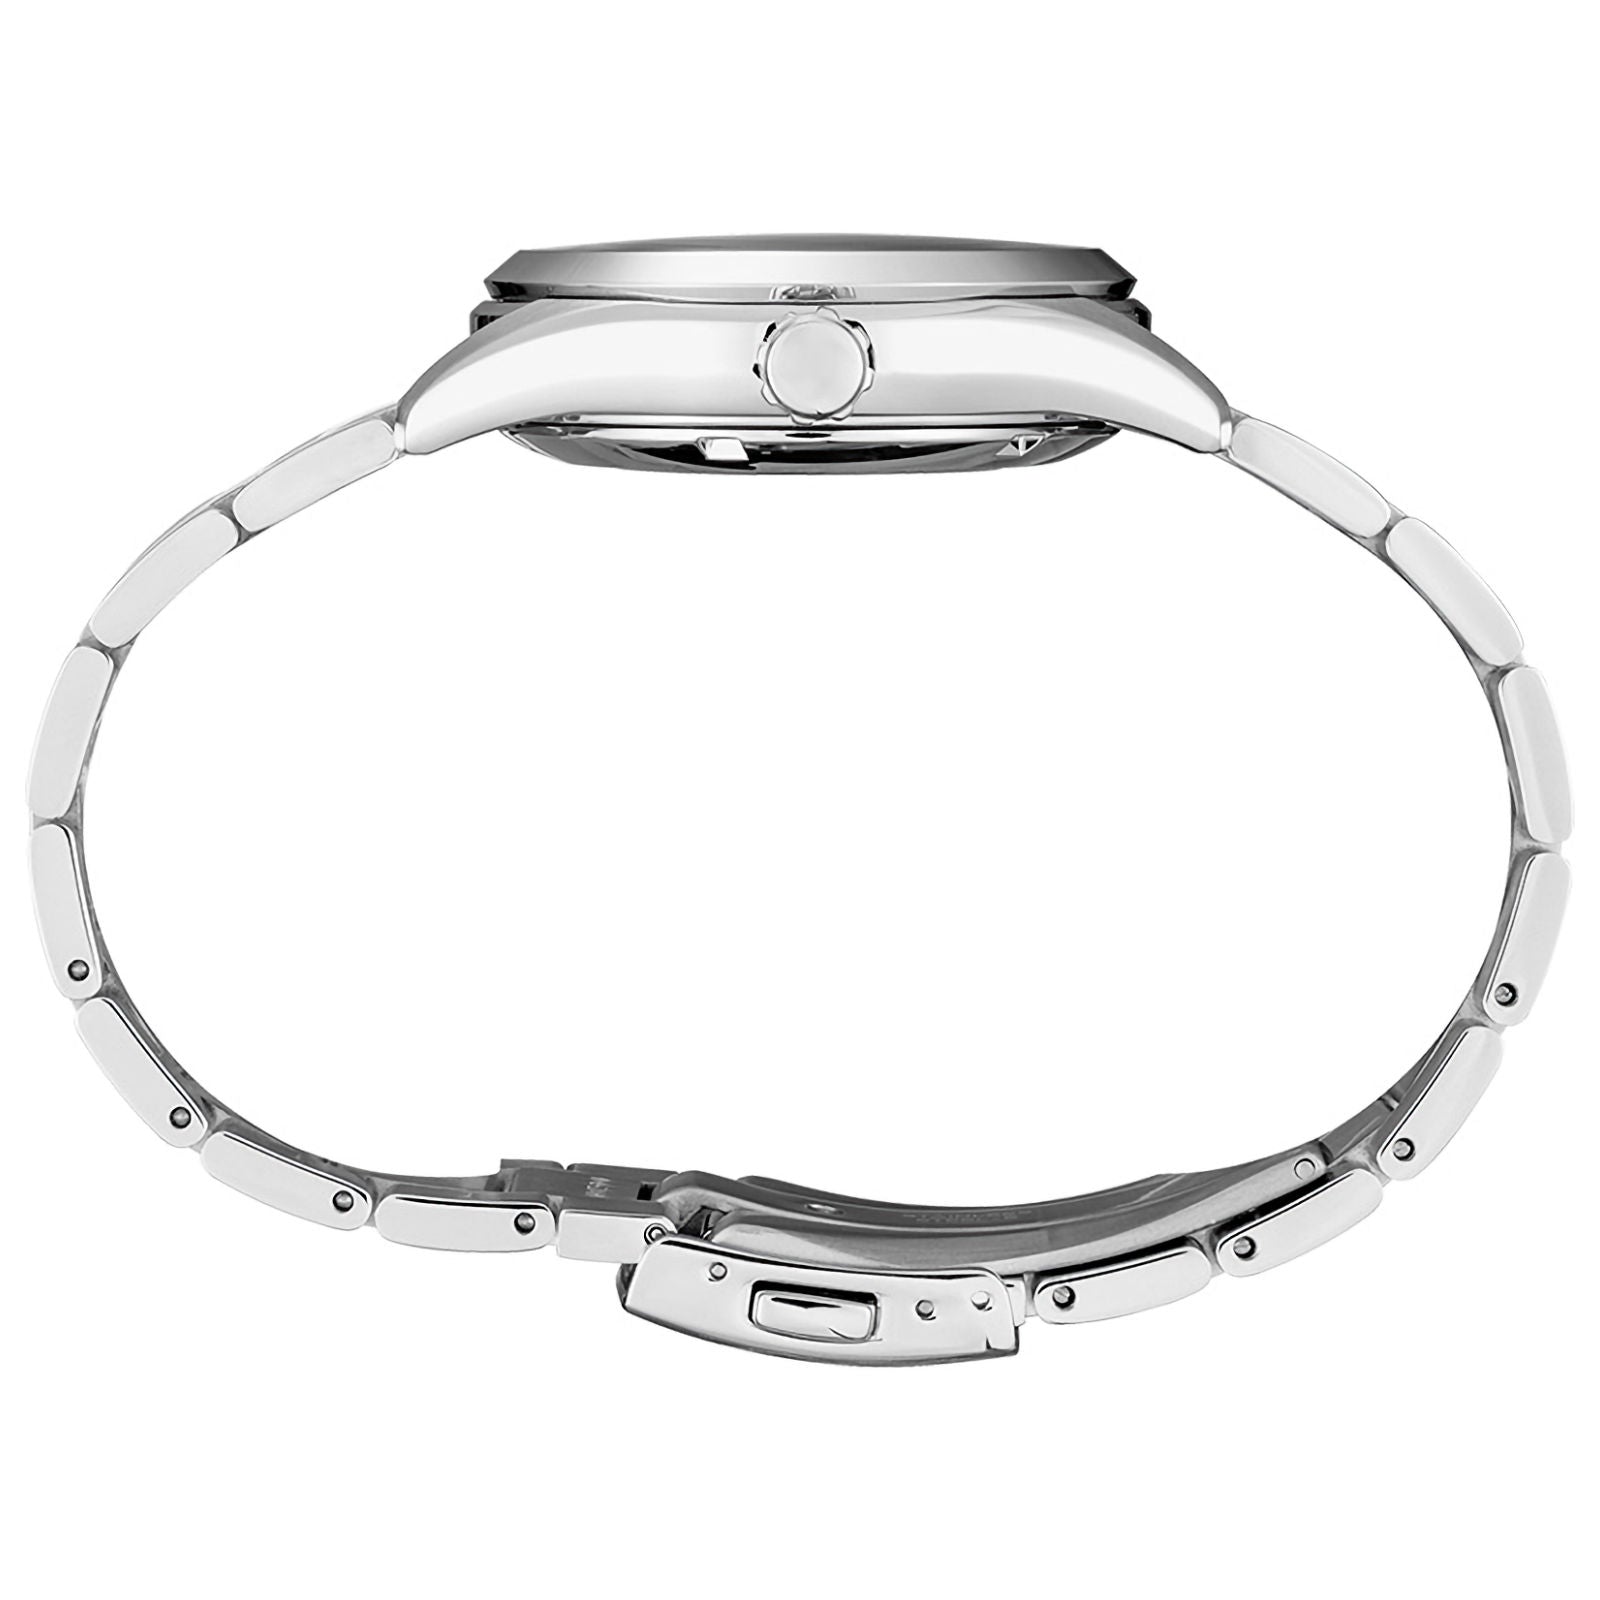 Seiko Prospex Automatic Men's Watch SPB155J1 - Obsessions Jewellery